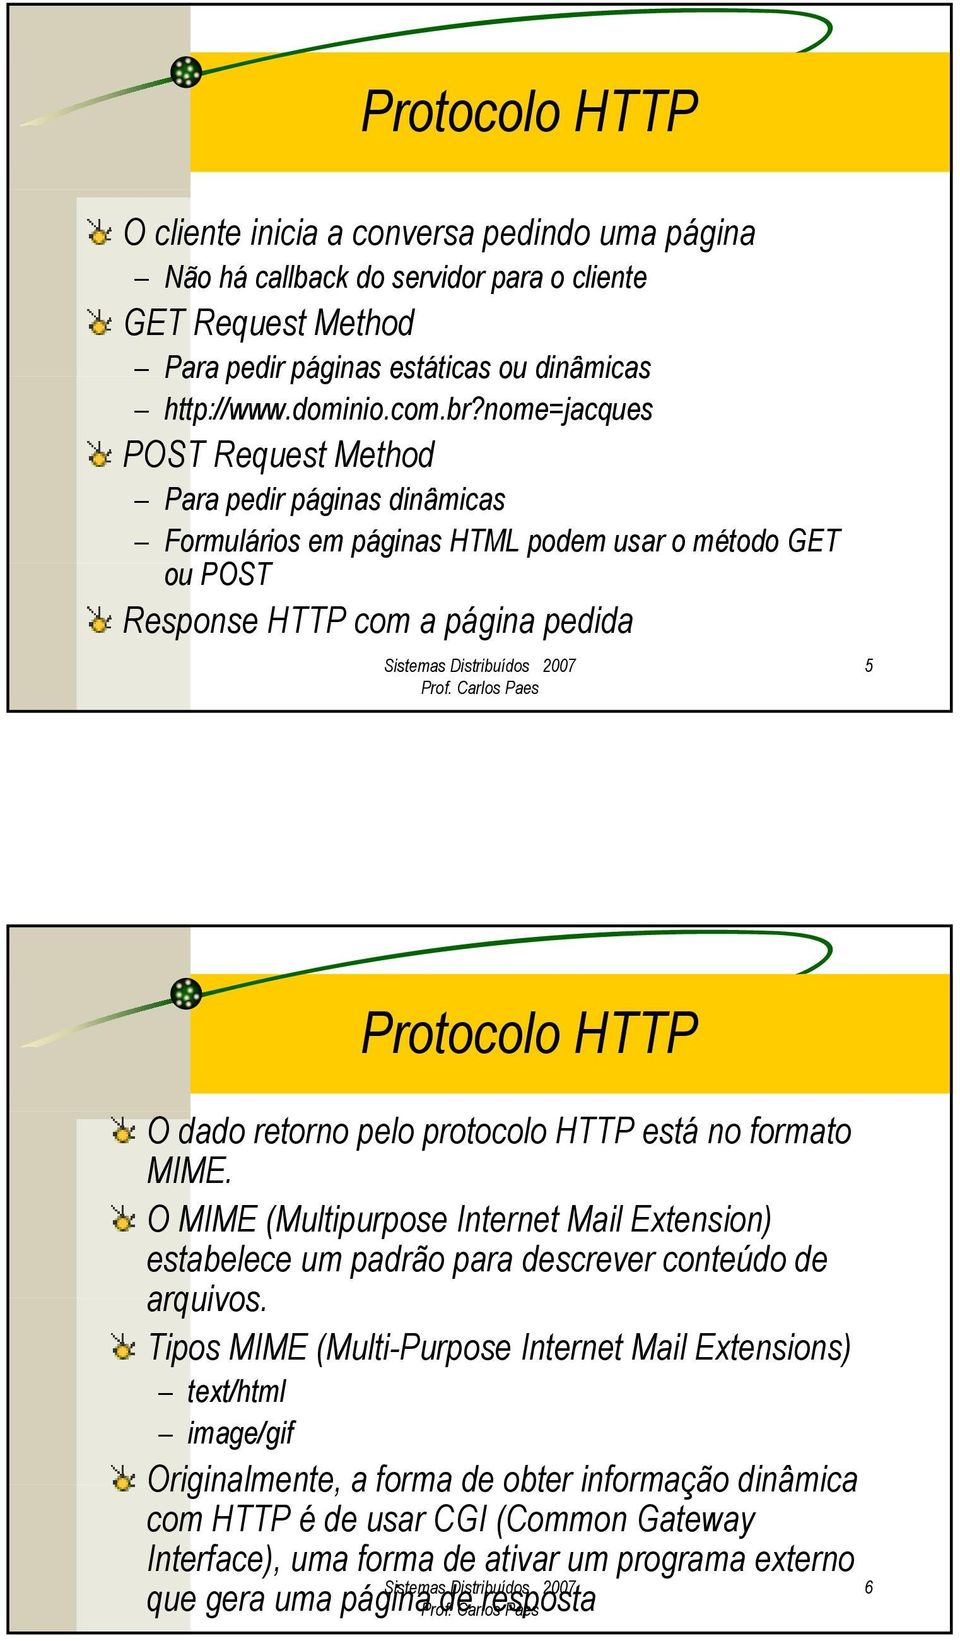 protocolo HTTP está no formato MIME. O MIME (Multipurpose Internet Mail Extension) estabelece um padrão para descrever conteúdo de arquivos.